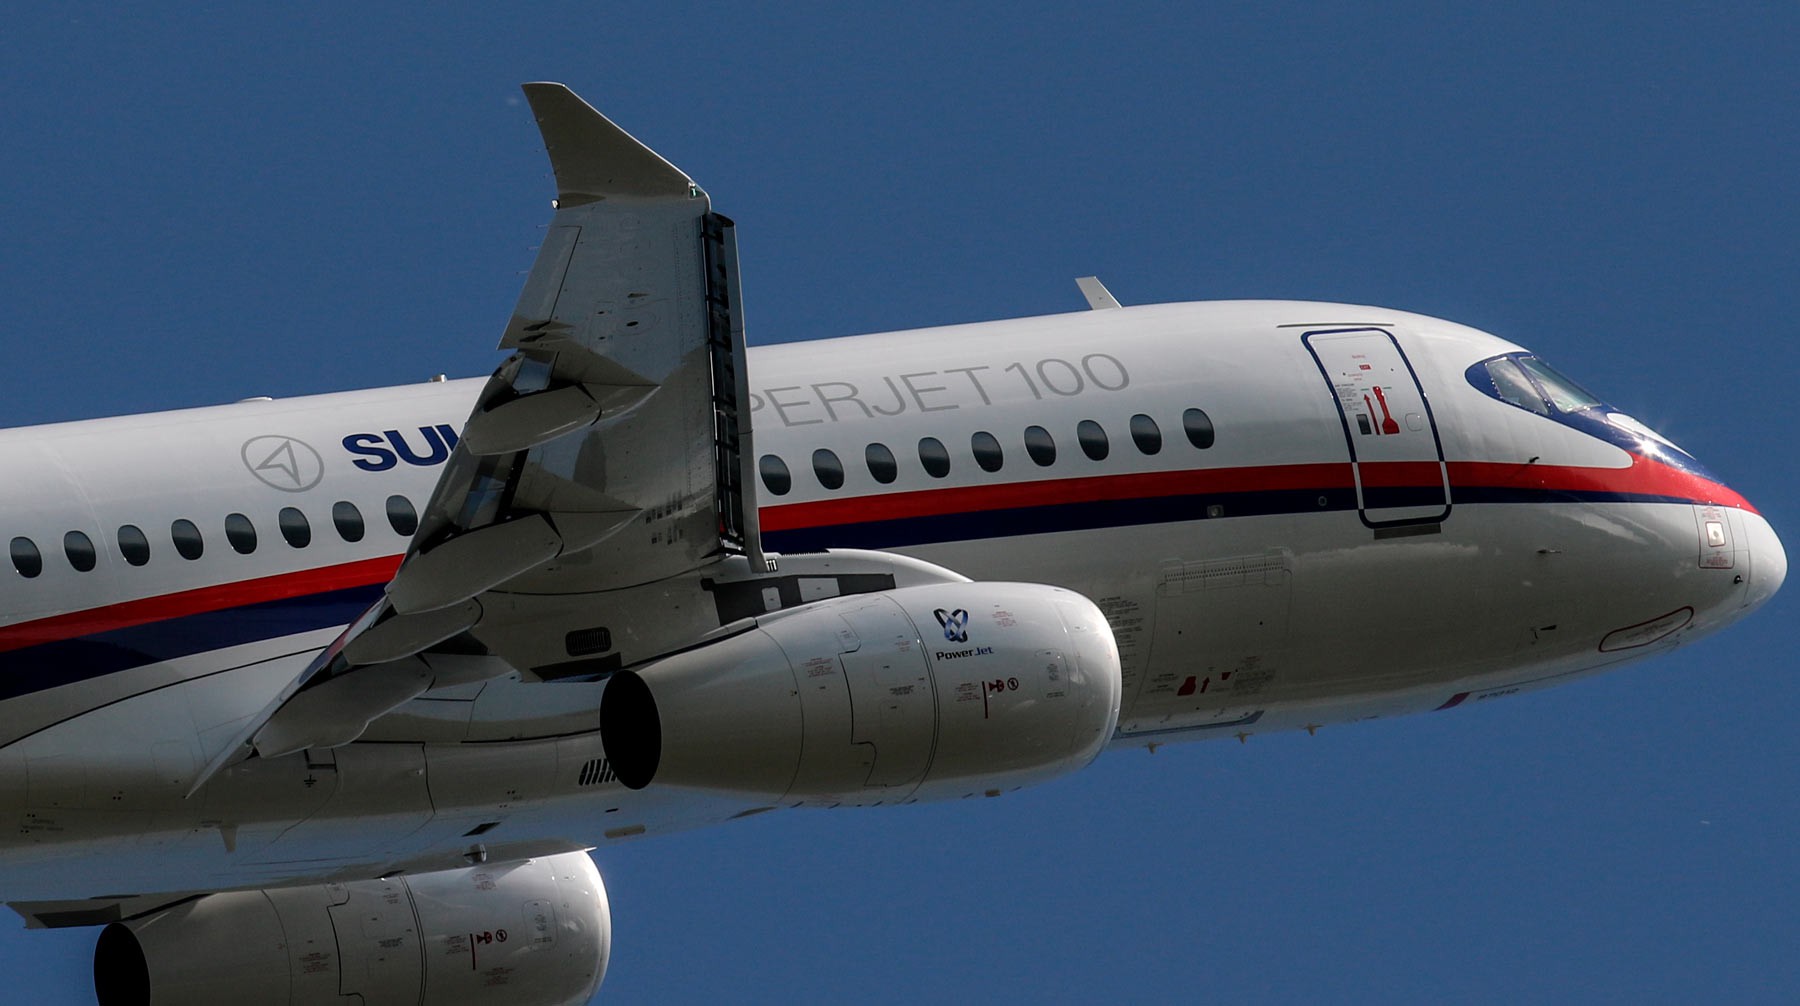 Dailystorm - Sukhoi Superjet совершил экстренную посадку в Шереметьеве из-за проблем с двигателем